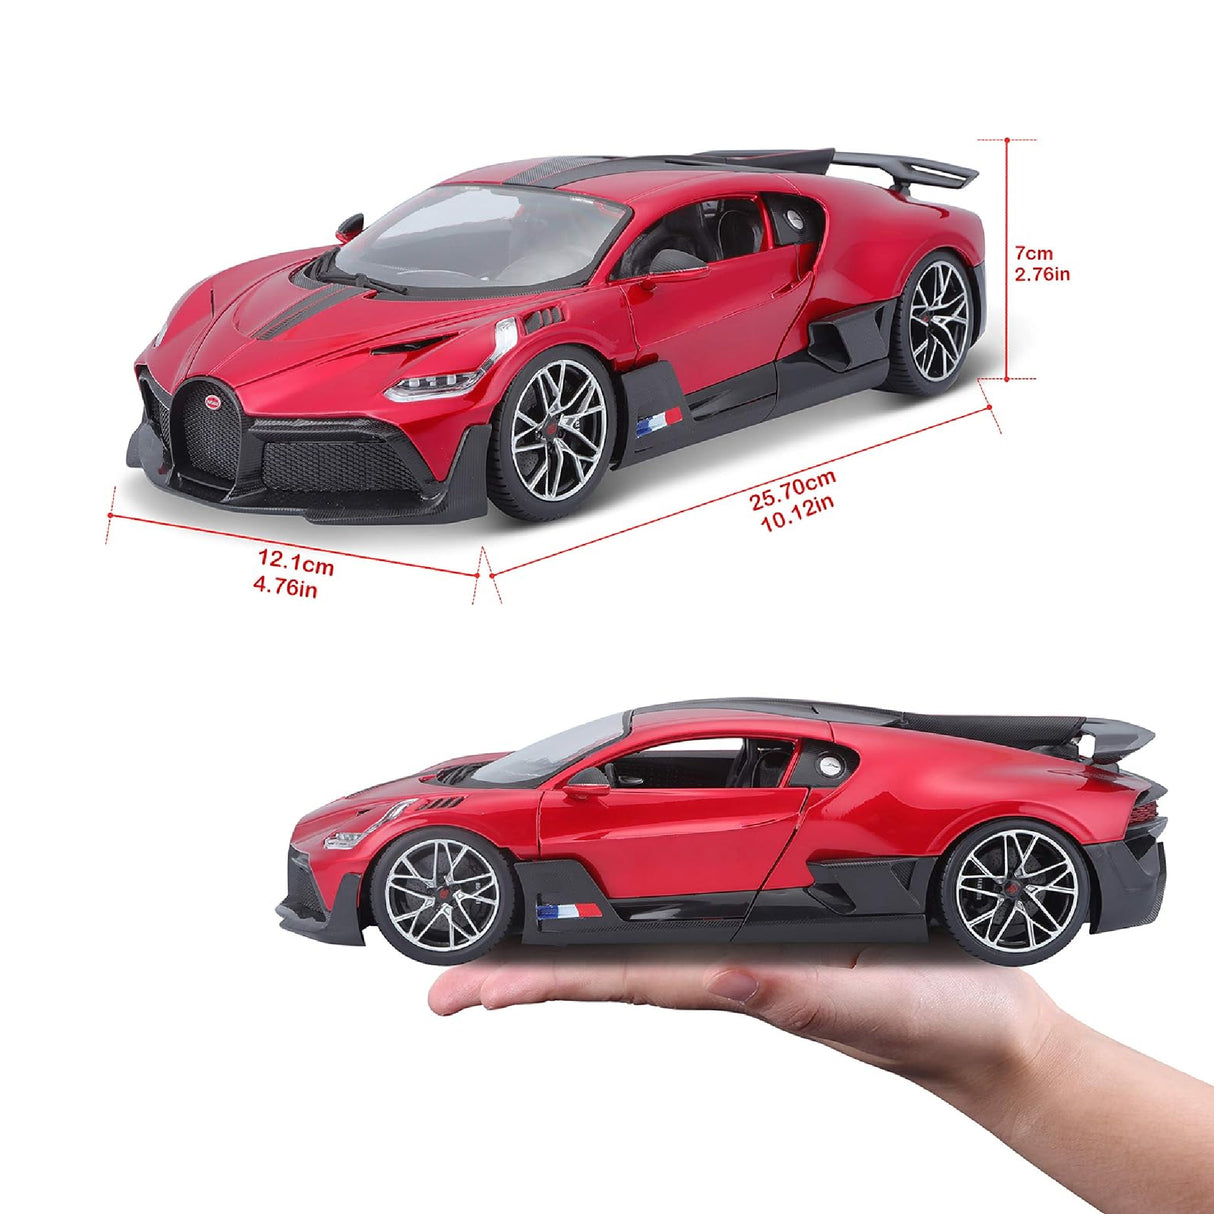 Bburago Bugatti Divo - Red 1:18 Scale